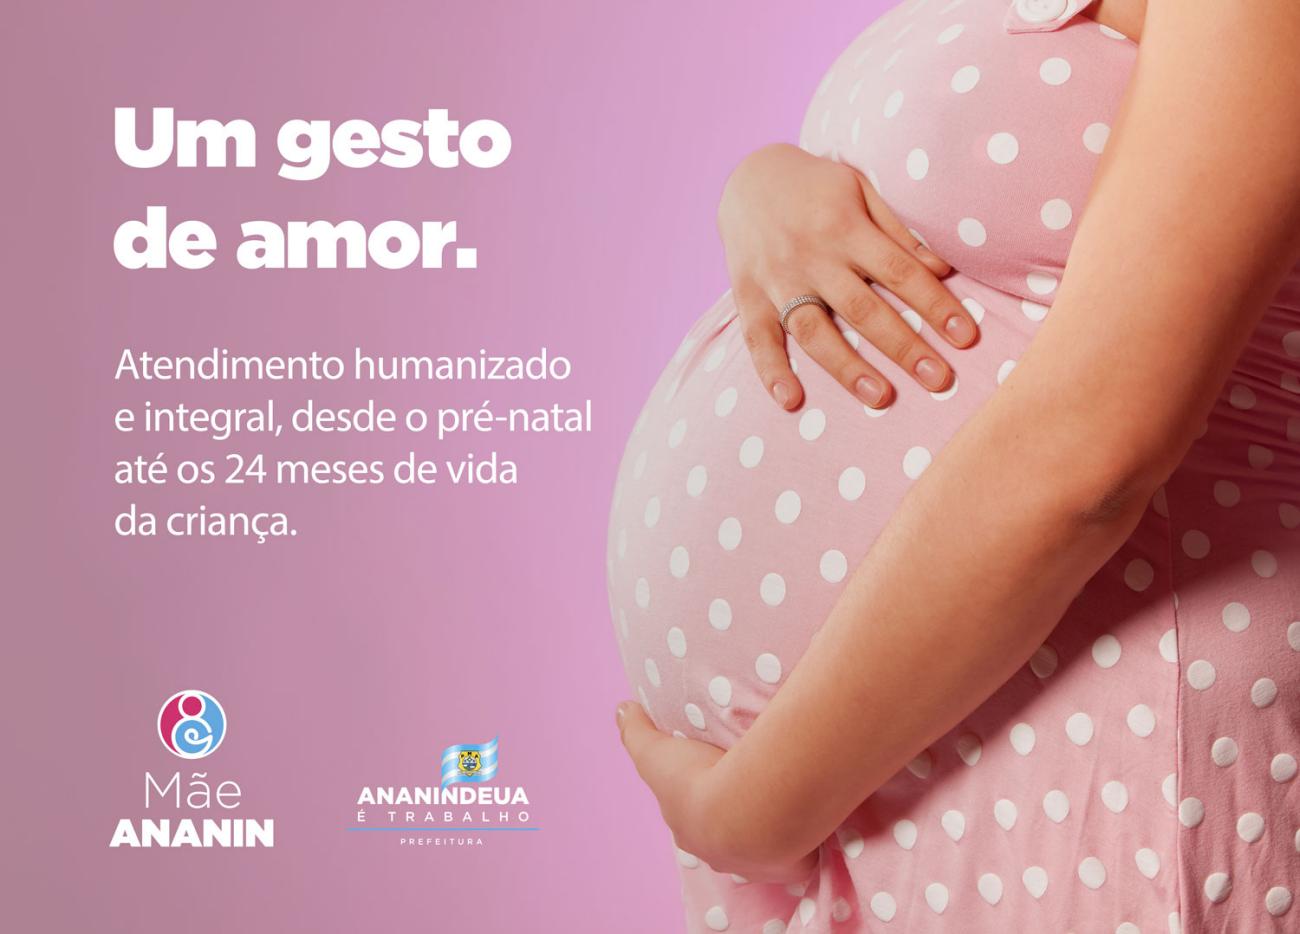 CONSULTORIA | Programa auxilia gestante durante a gravidez